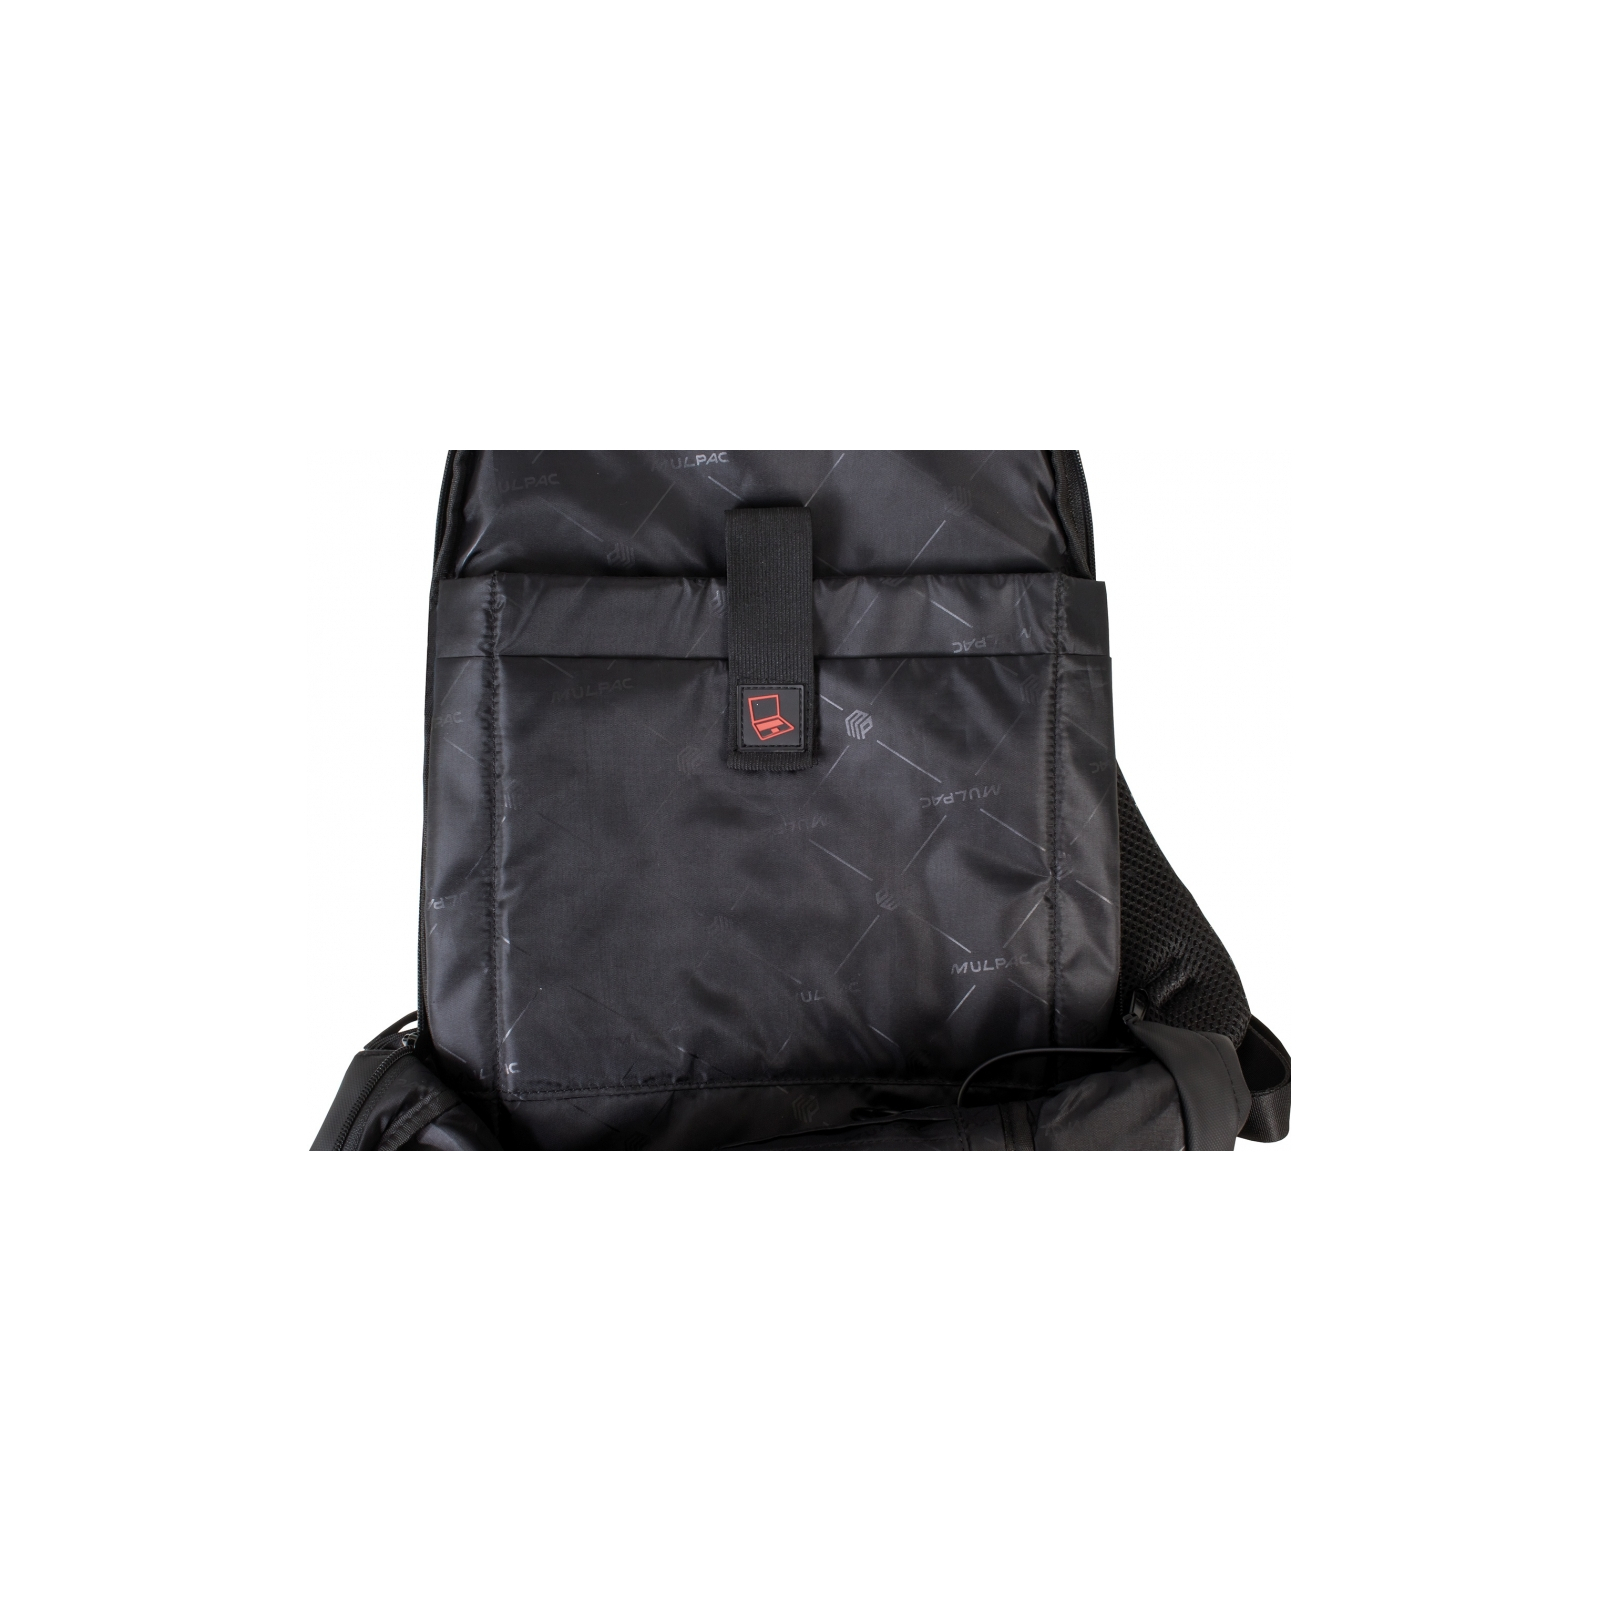 Рюкзак школьный Optima Anti-theft" 17 Серый (O97368) изображение 11